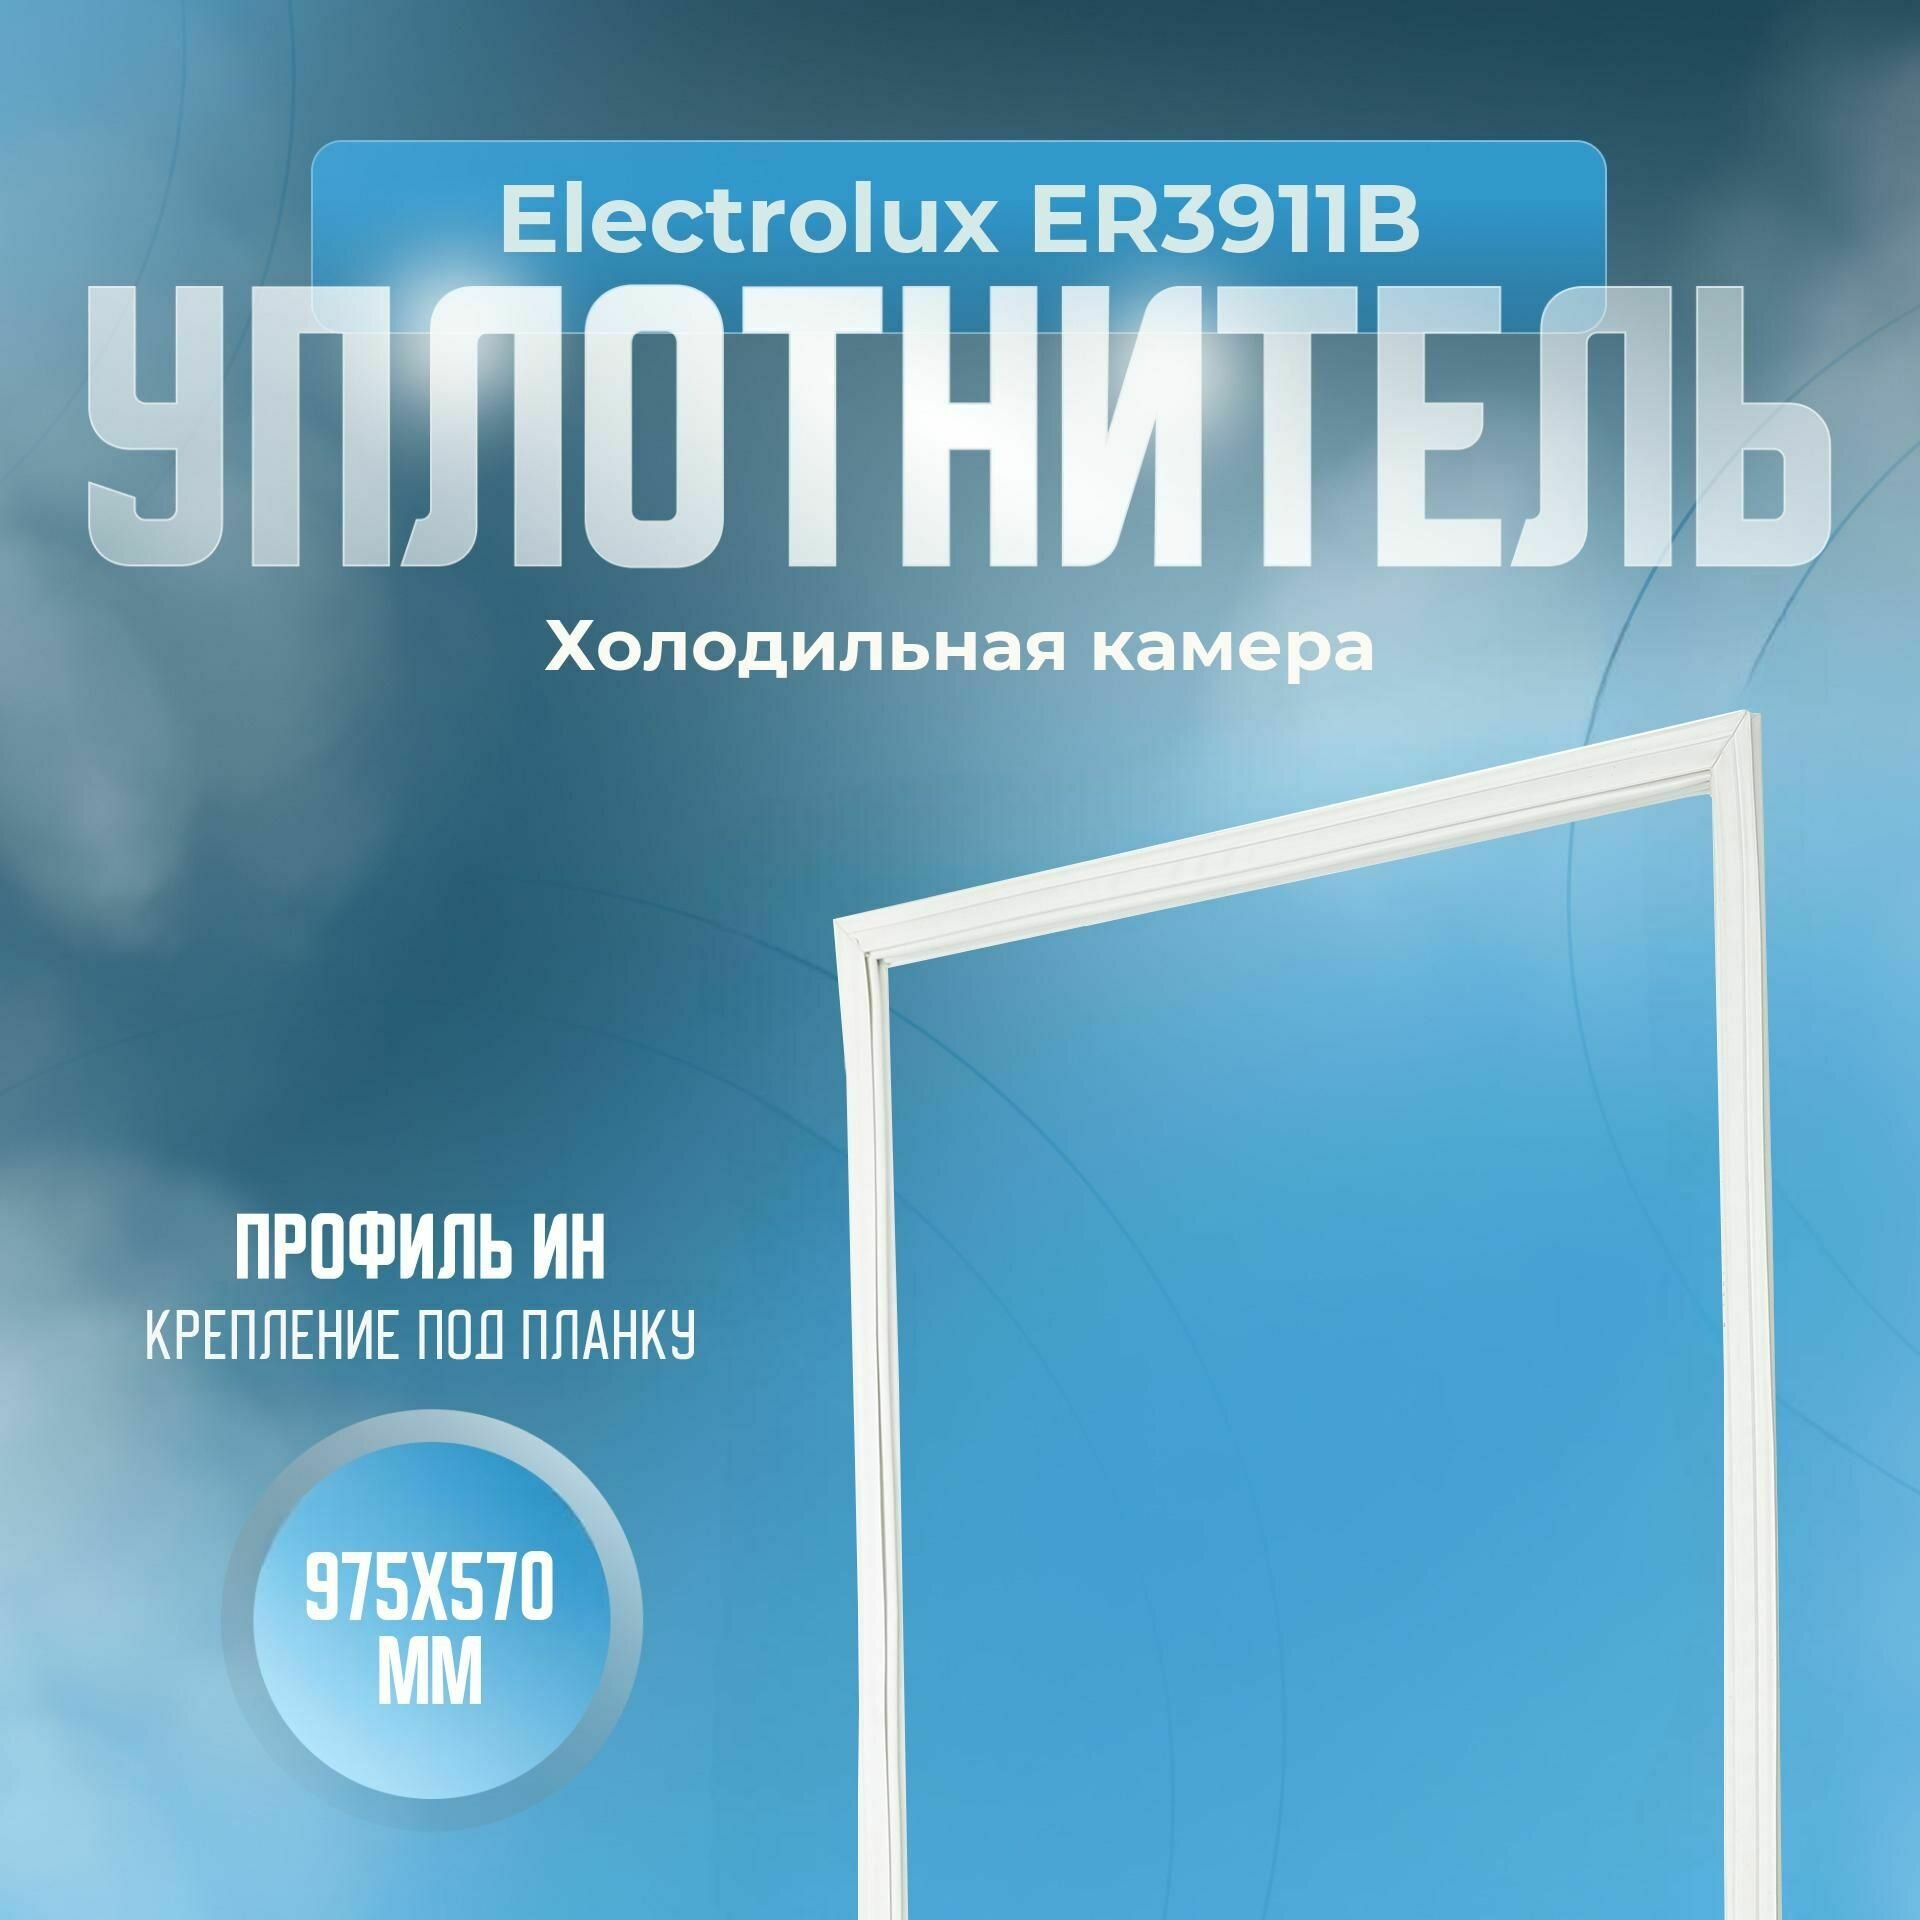 Уплотнитель Electrolux ER3911В. х. к, Размер - 975х570 мм. ИН